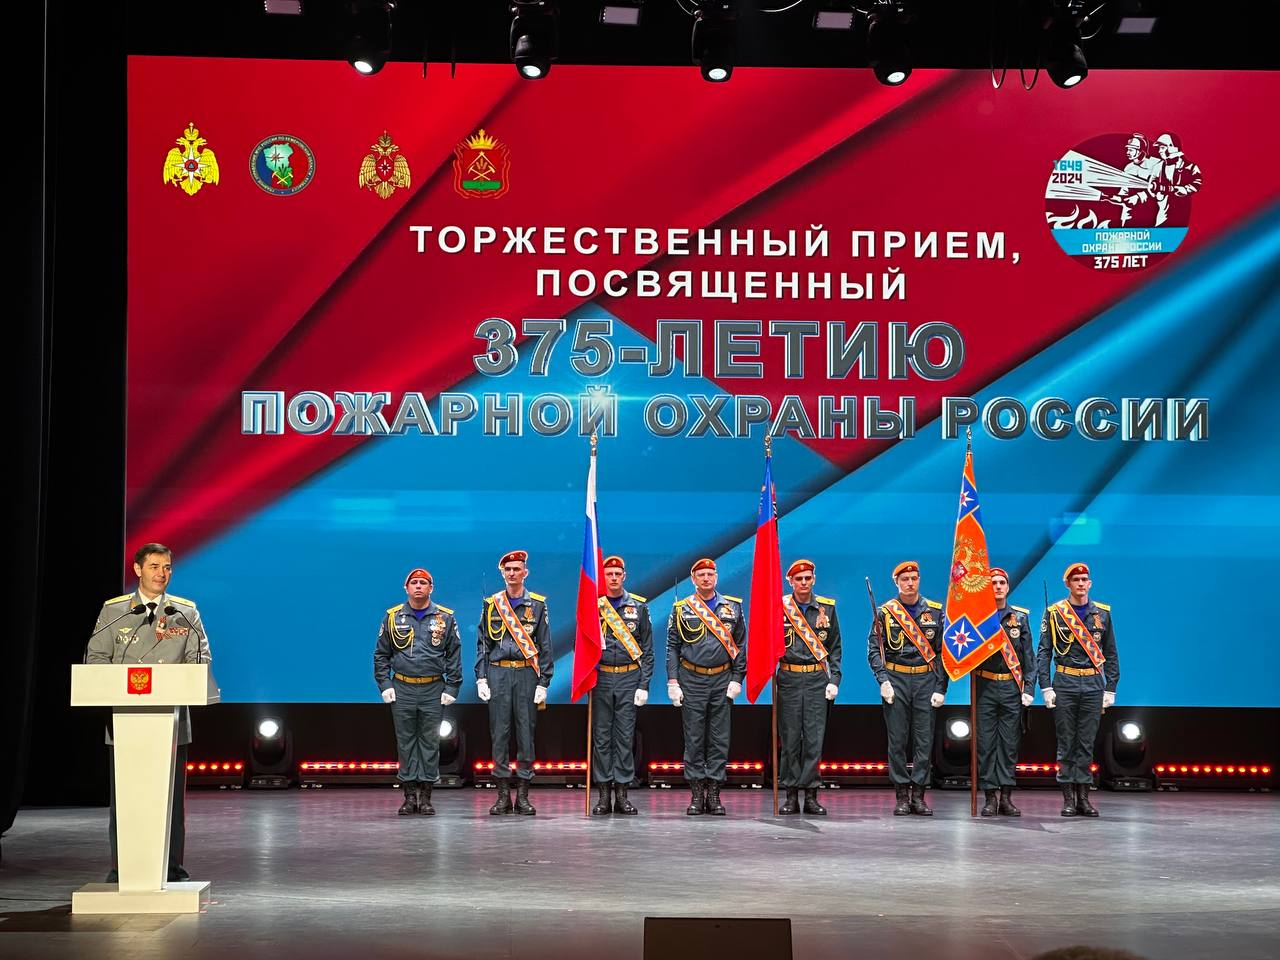 В городе Кемерово состоялось торжественное мероприятие, посвящённое празднованию 375-летия со дня основания пожарной охраны России.